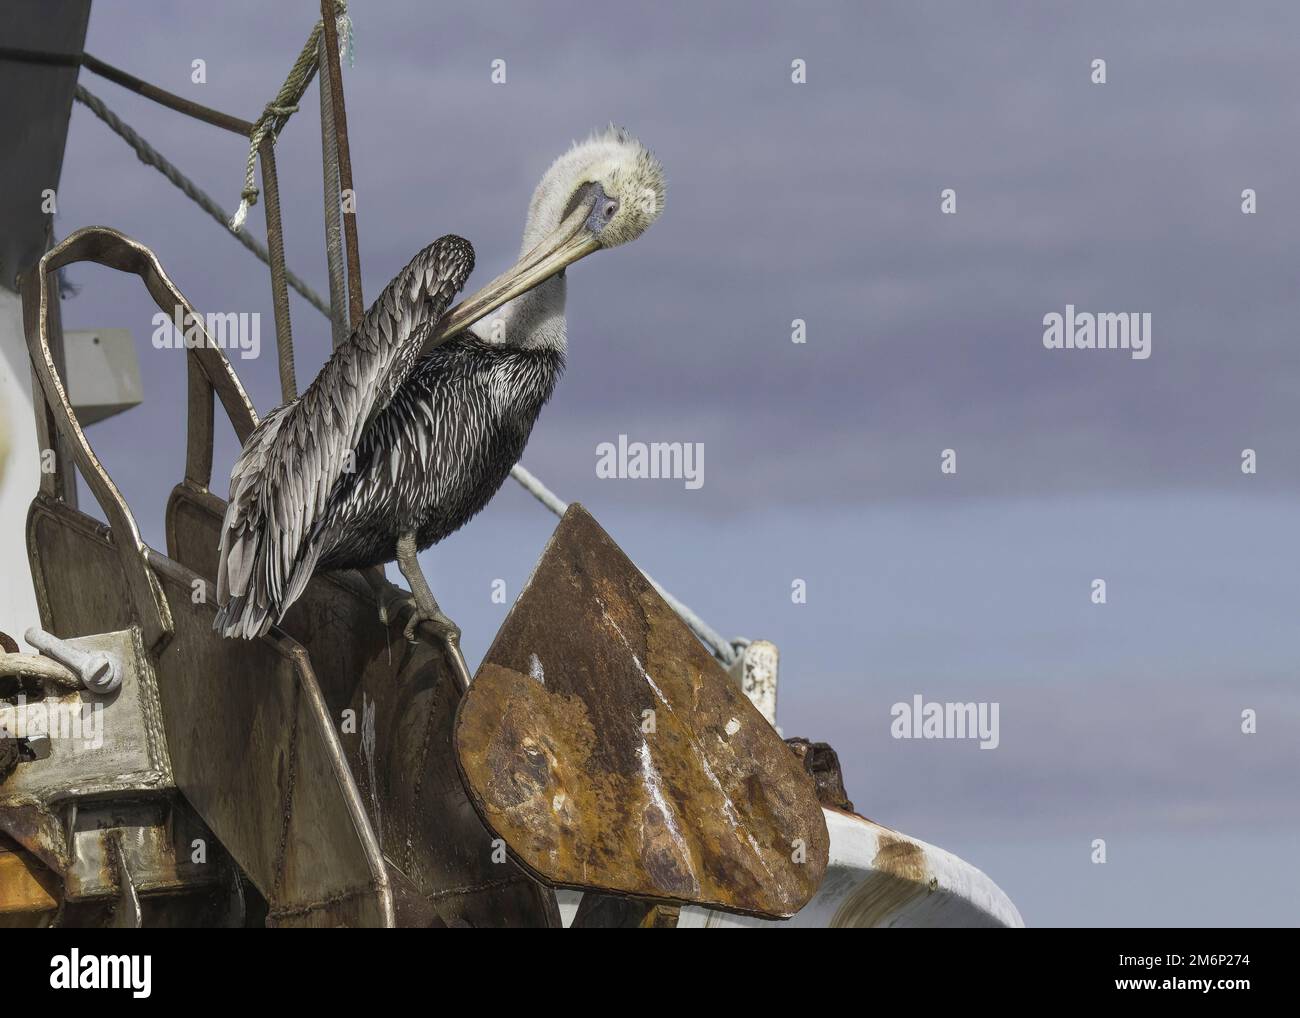 L'aile de prens de pélican brun adulte avec un long bec, perchée sur une ancre rouillée d'un bateau sur la côte du golfe de Floride, présente des plumes blanches d'abd gris brun Banque D'Images